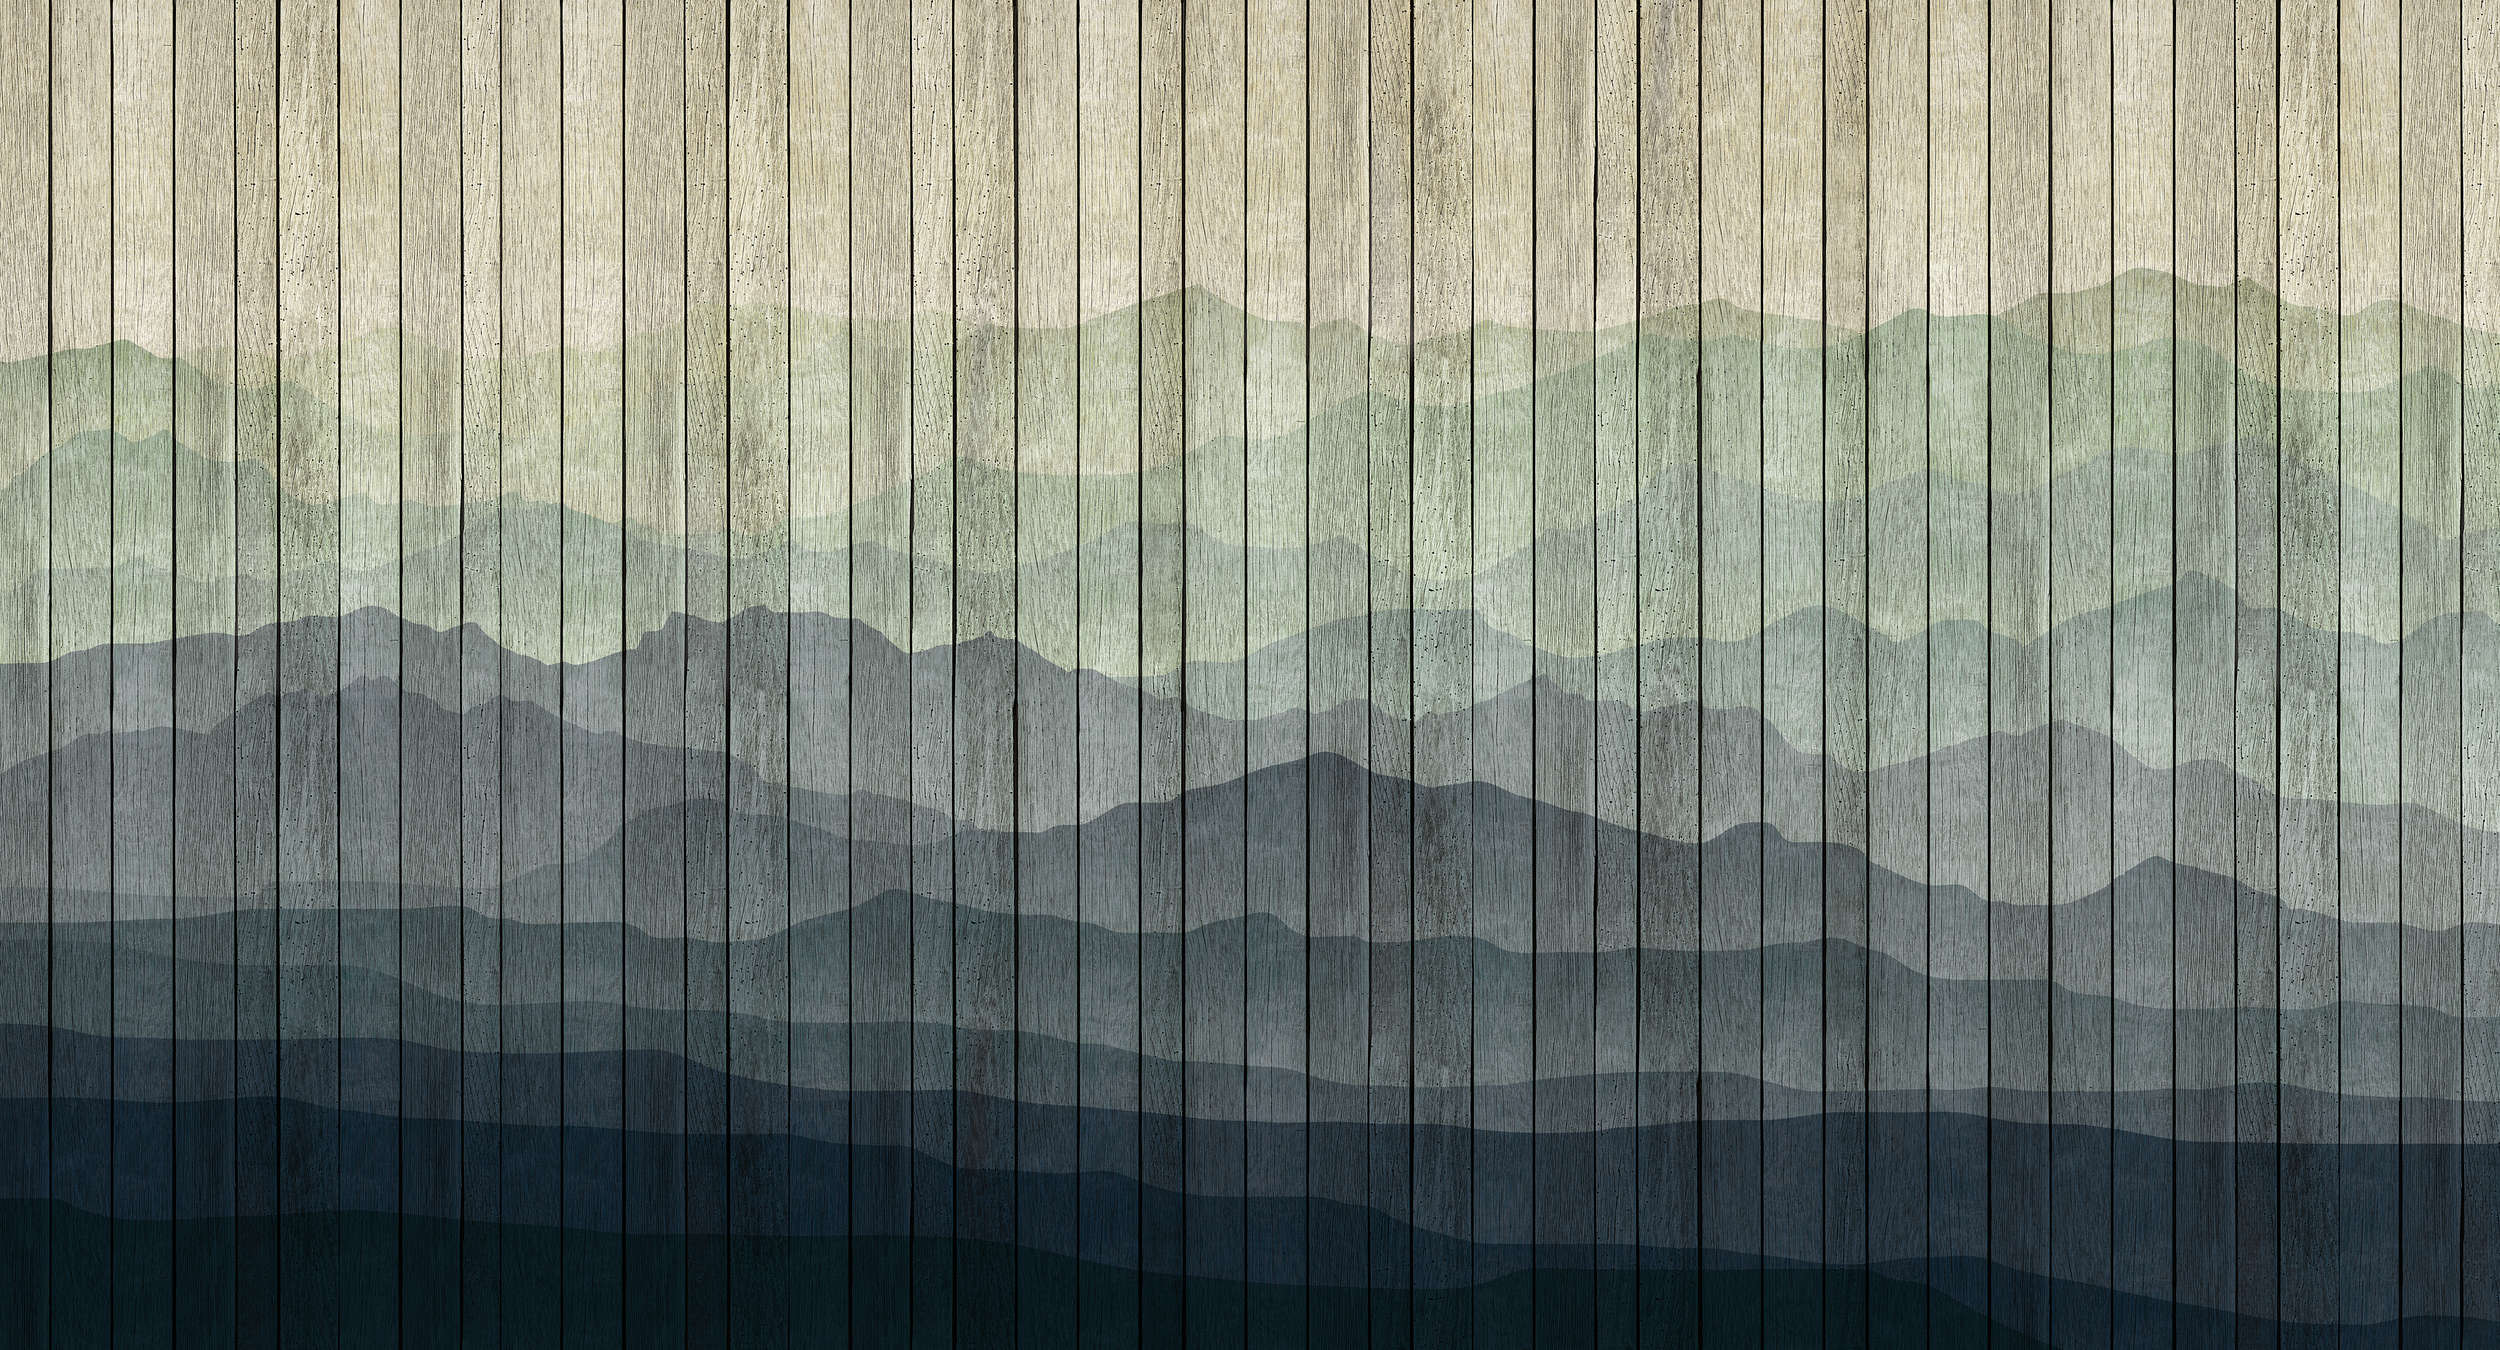             Mountains 1 - Modern Wallpaper Mountain Landscape & Board Optics - Beige, Blue | Matt Smooth Non-woven
        